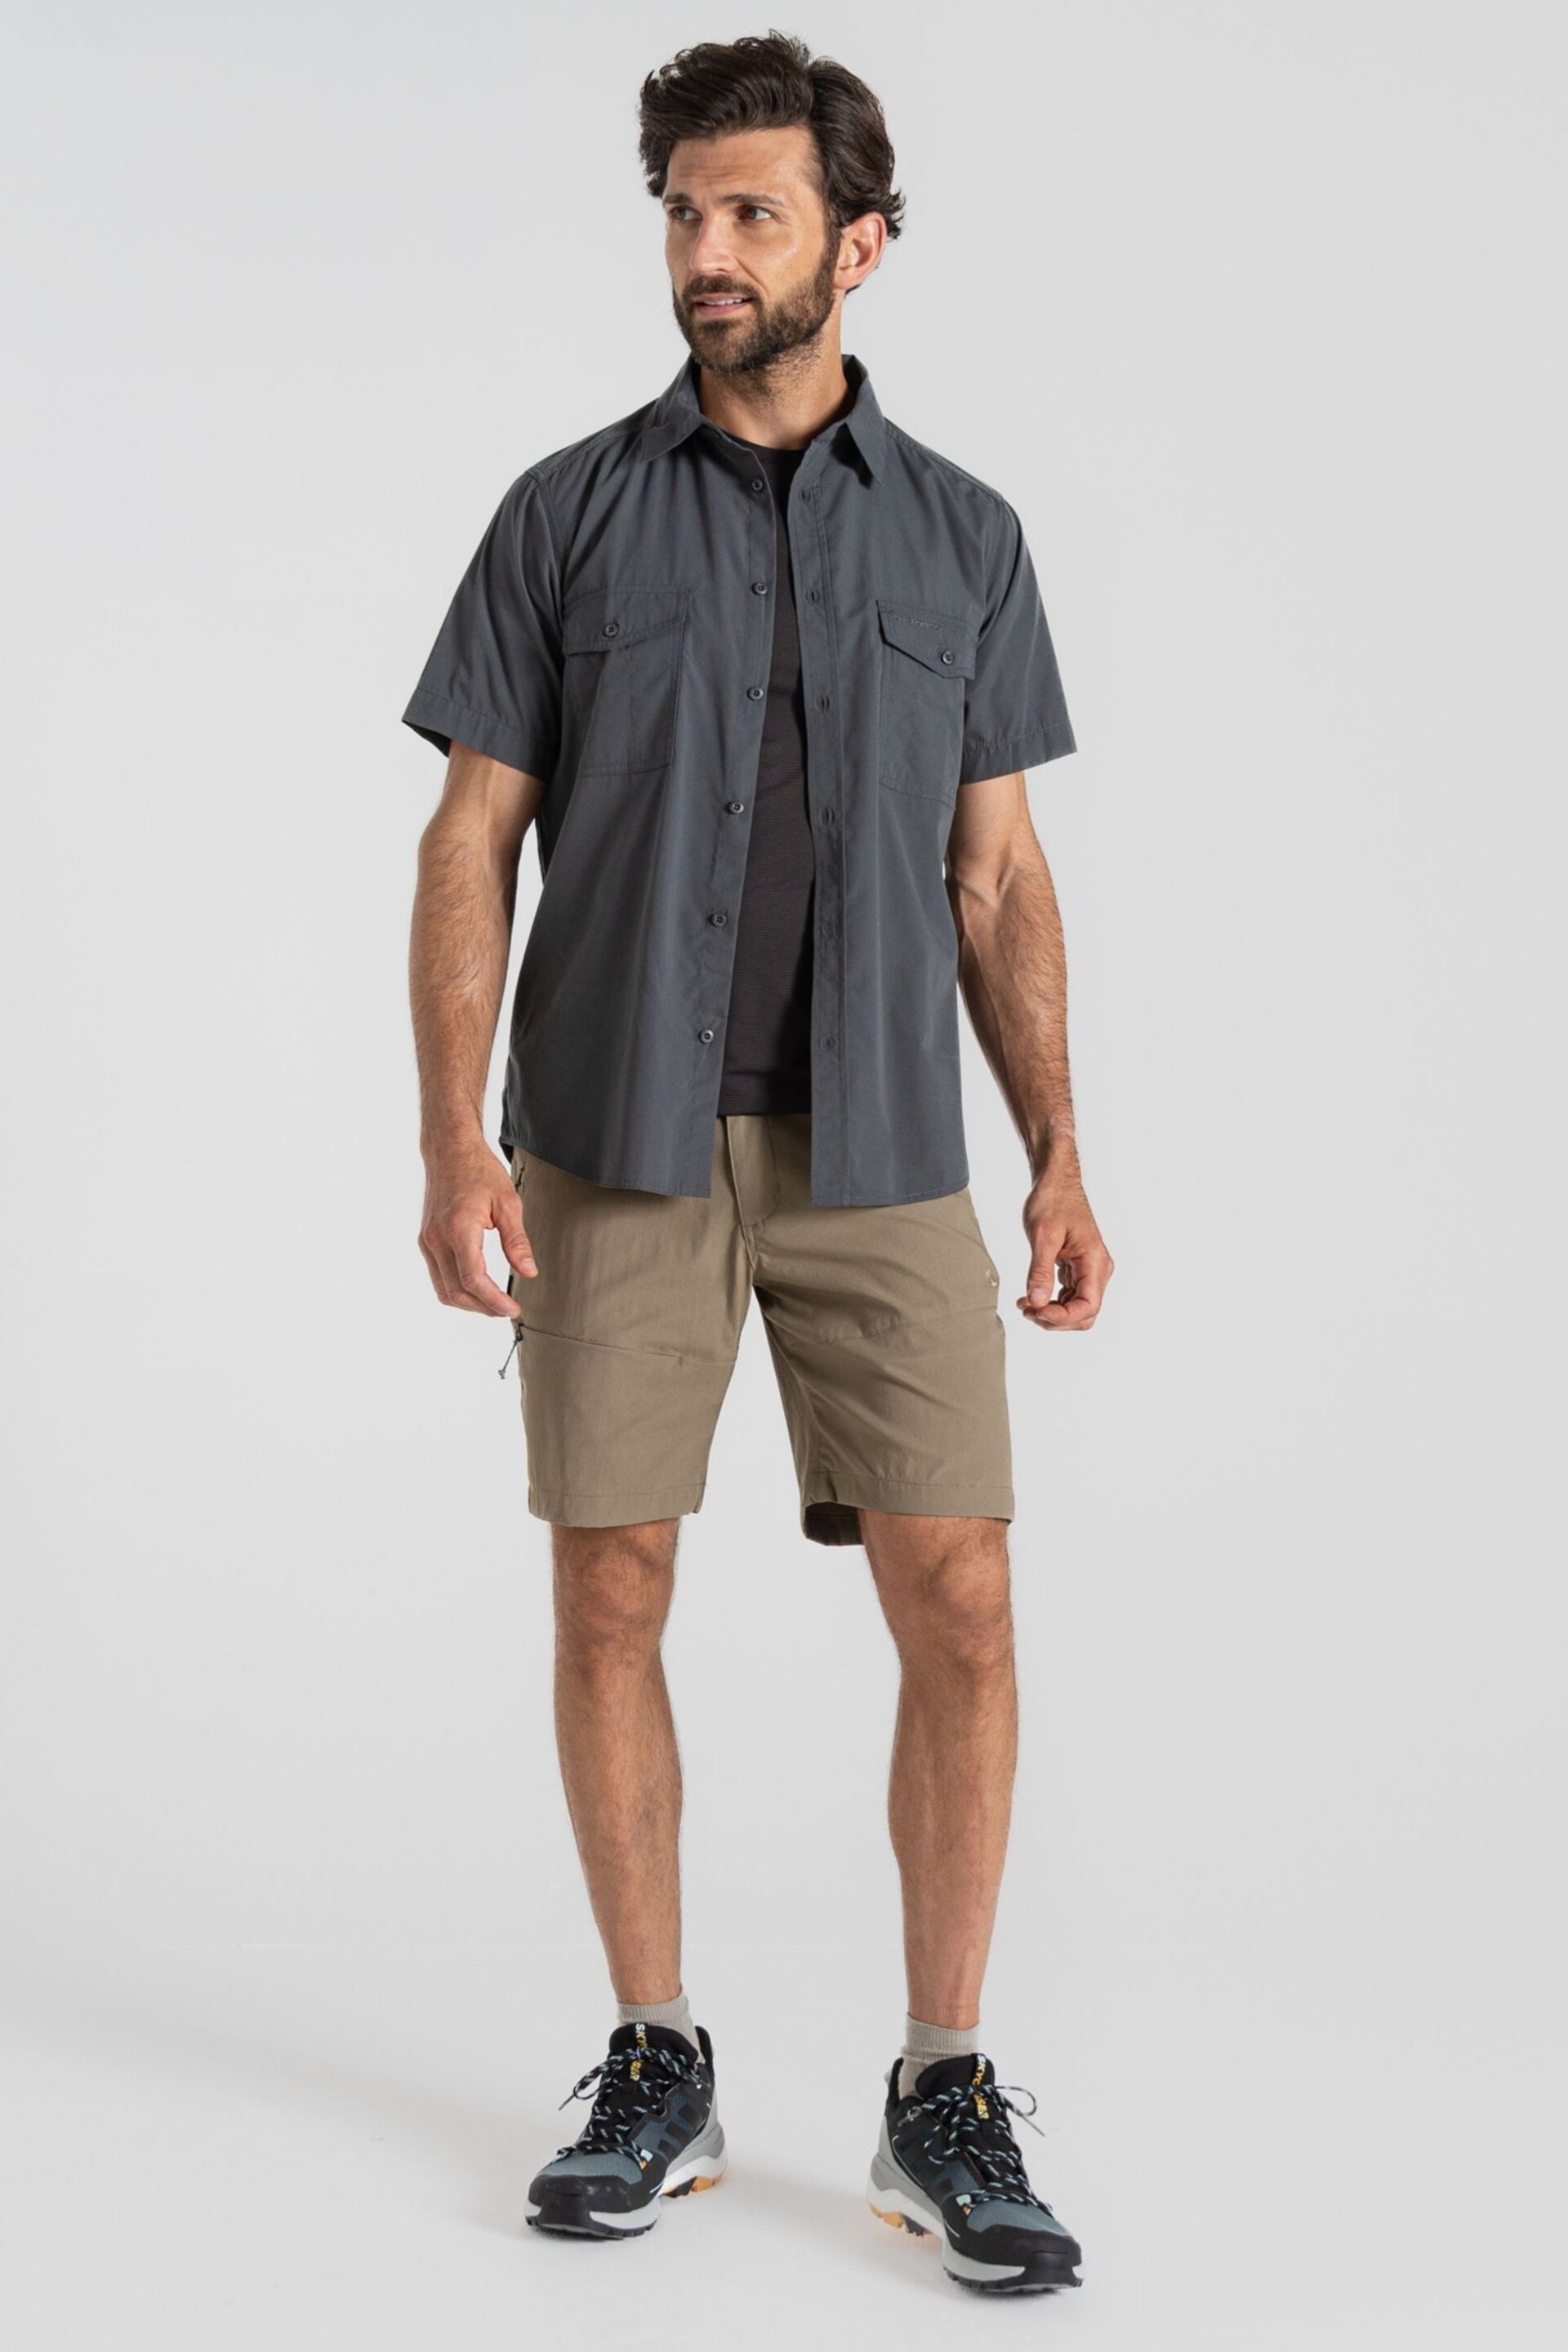 Craghoppers Grey Kiwi Short Sleeved Shirt - Image 1 of 5